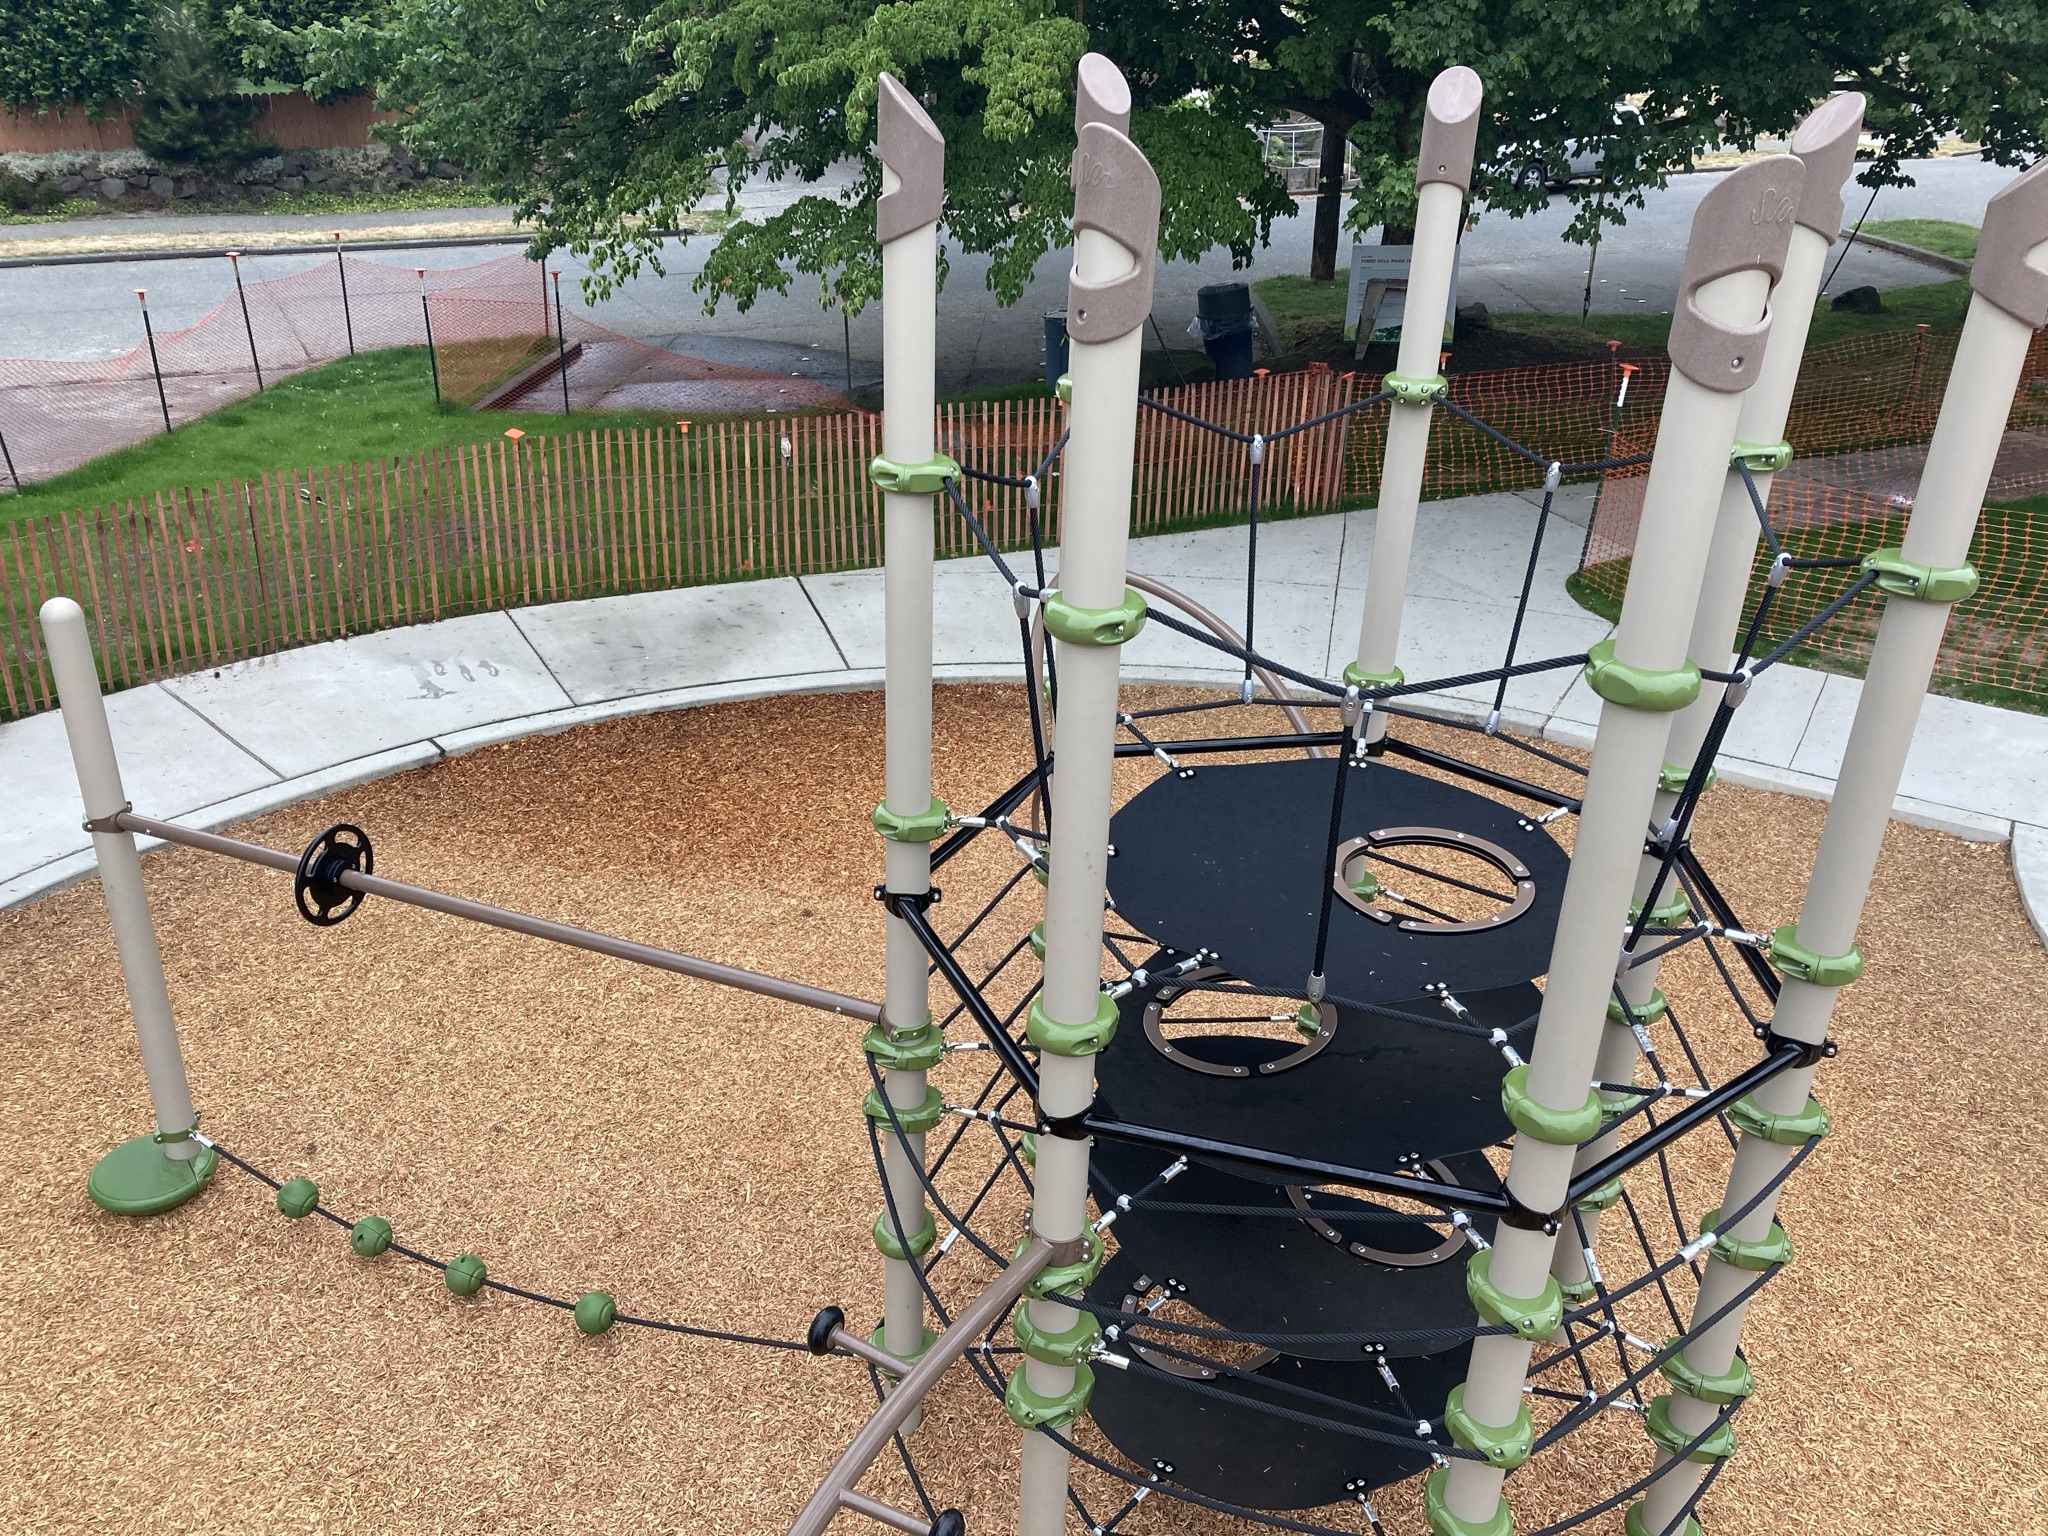 Licton Springs Park Playground